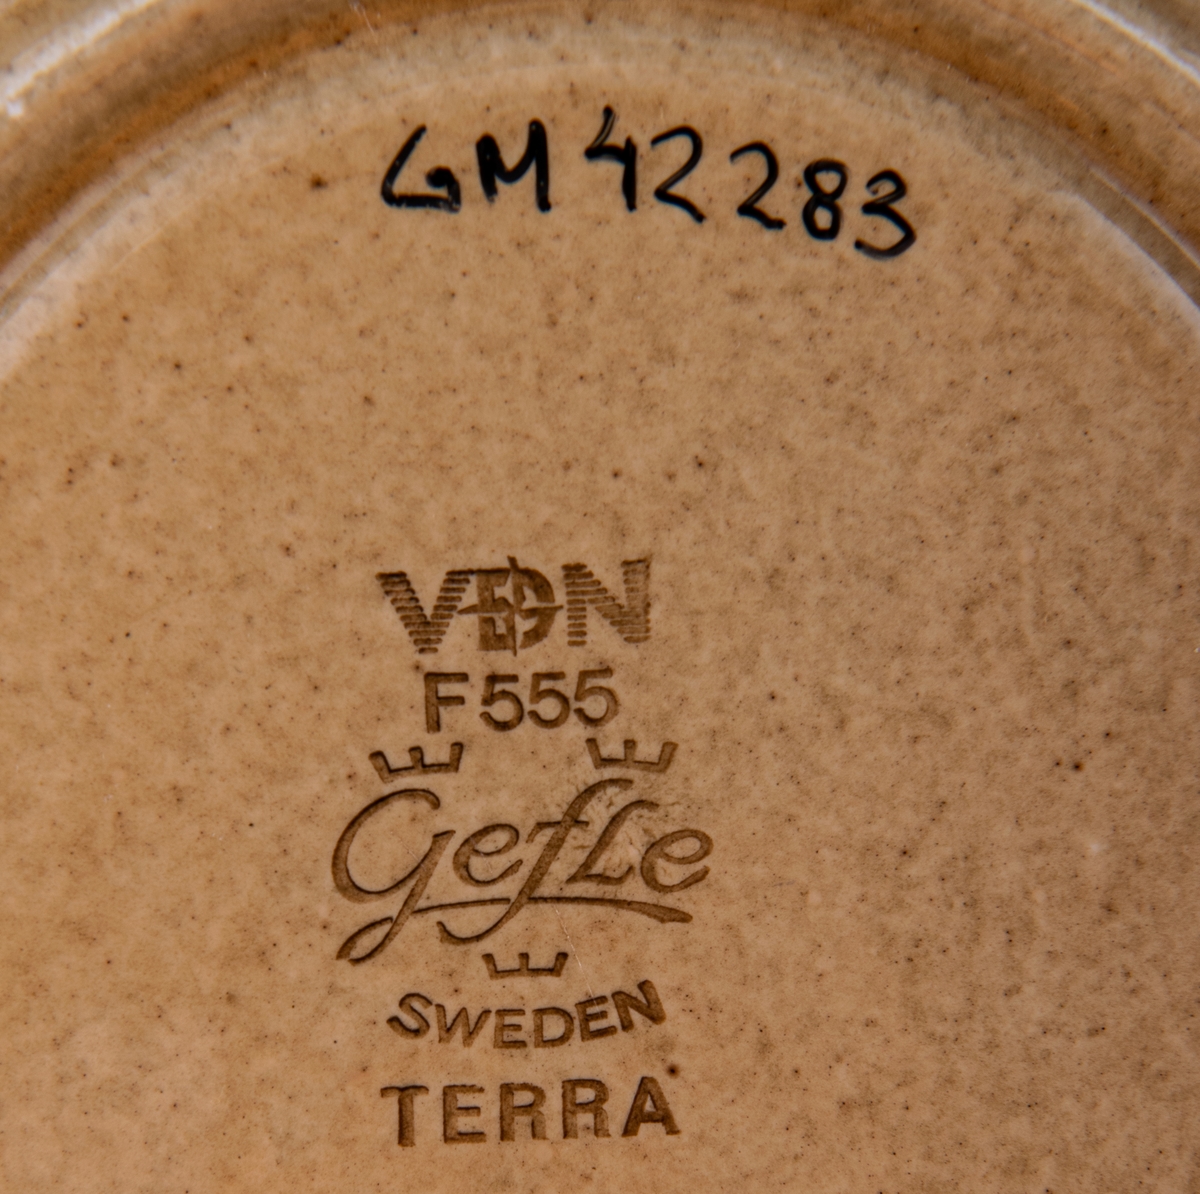 Kaffekopp modell EH, dekor Terra, modell och dekor av formgivare Berit Ternell. Gulbrun glasyr med ljusbrunt och mörkbrunt band.